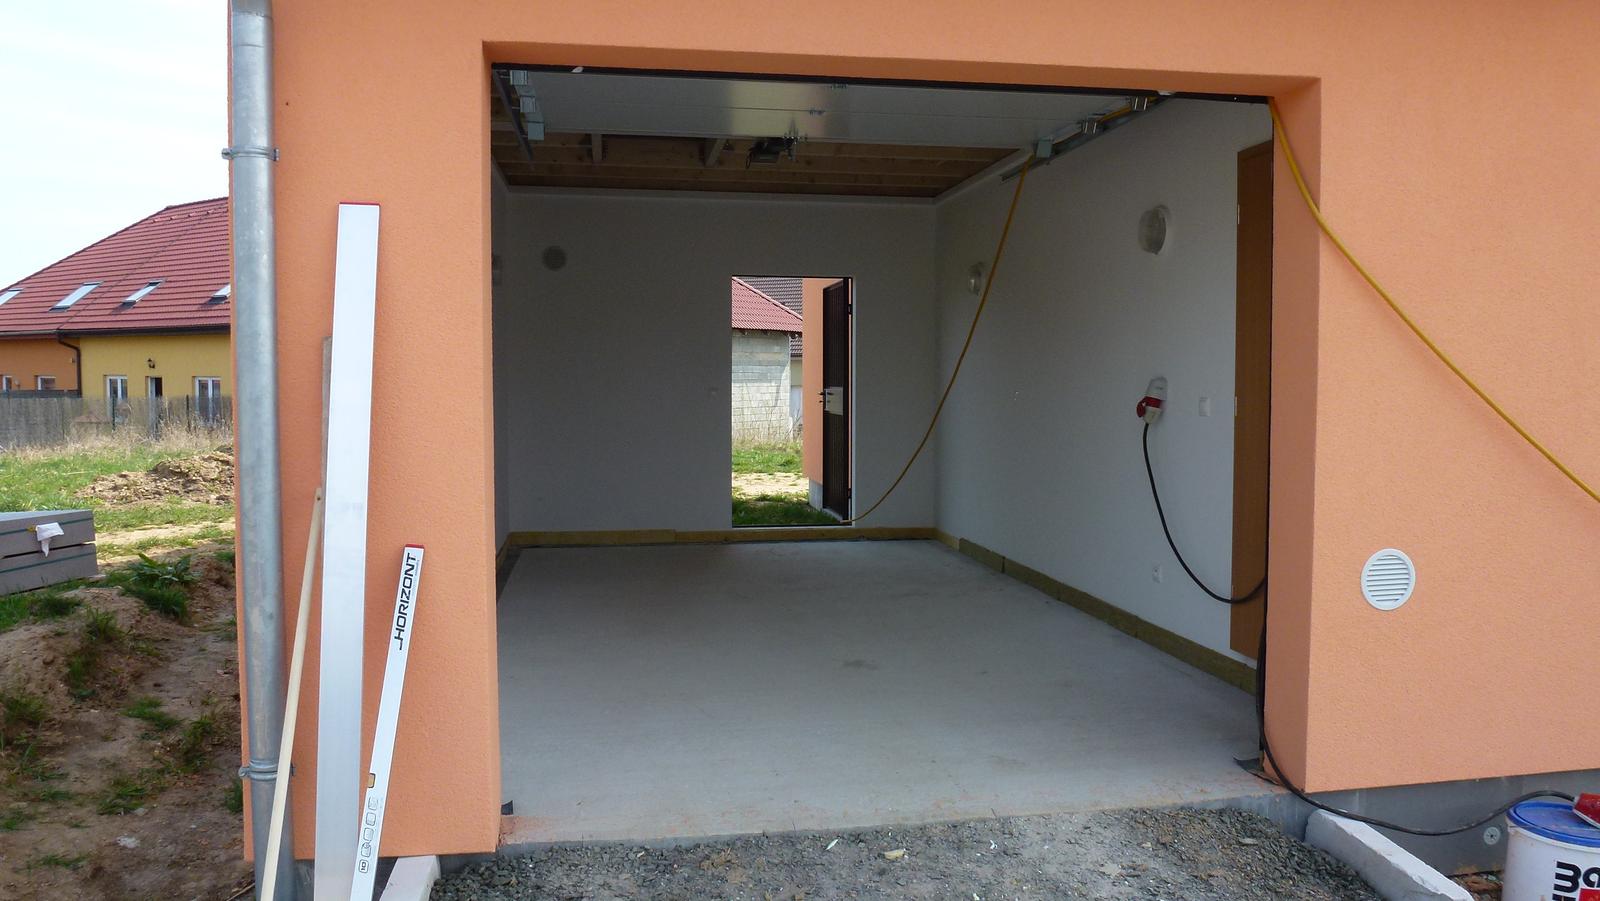 Nova 101 - zahrada a vše okolo - 11.4.2015 - betonování podlahy garáže